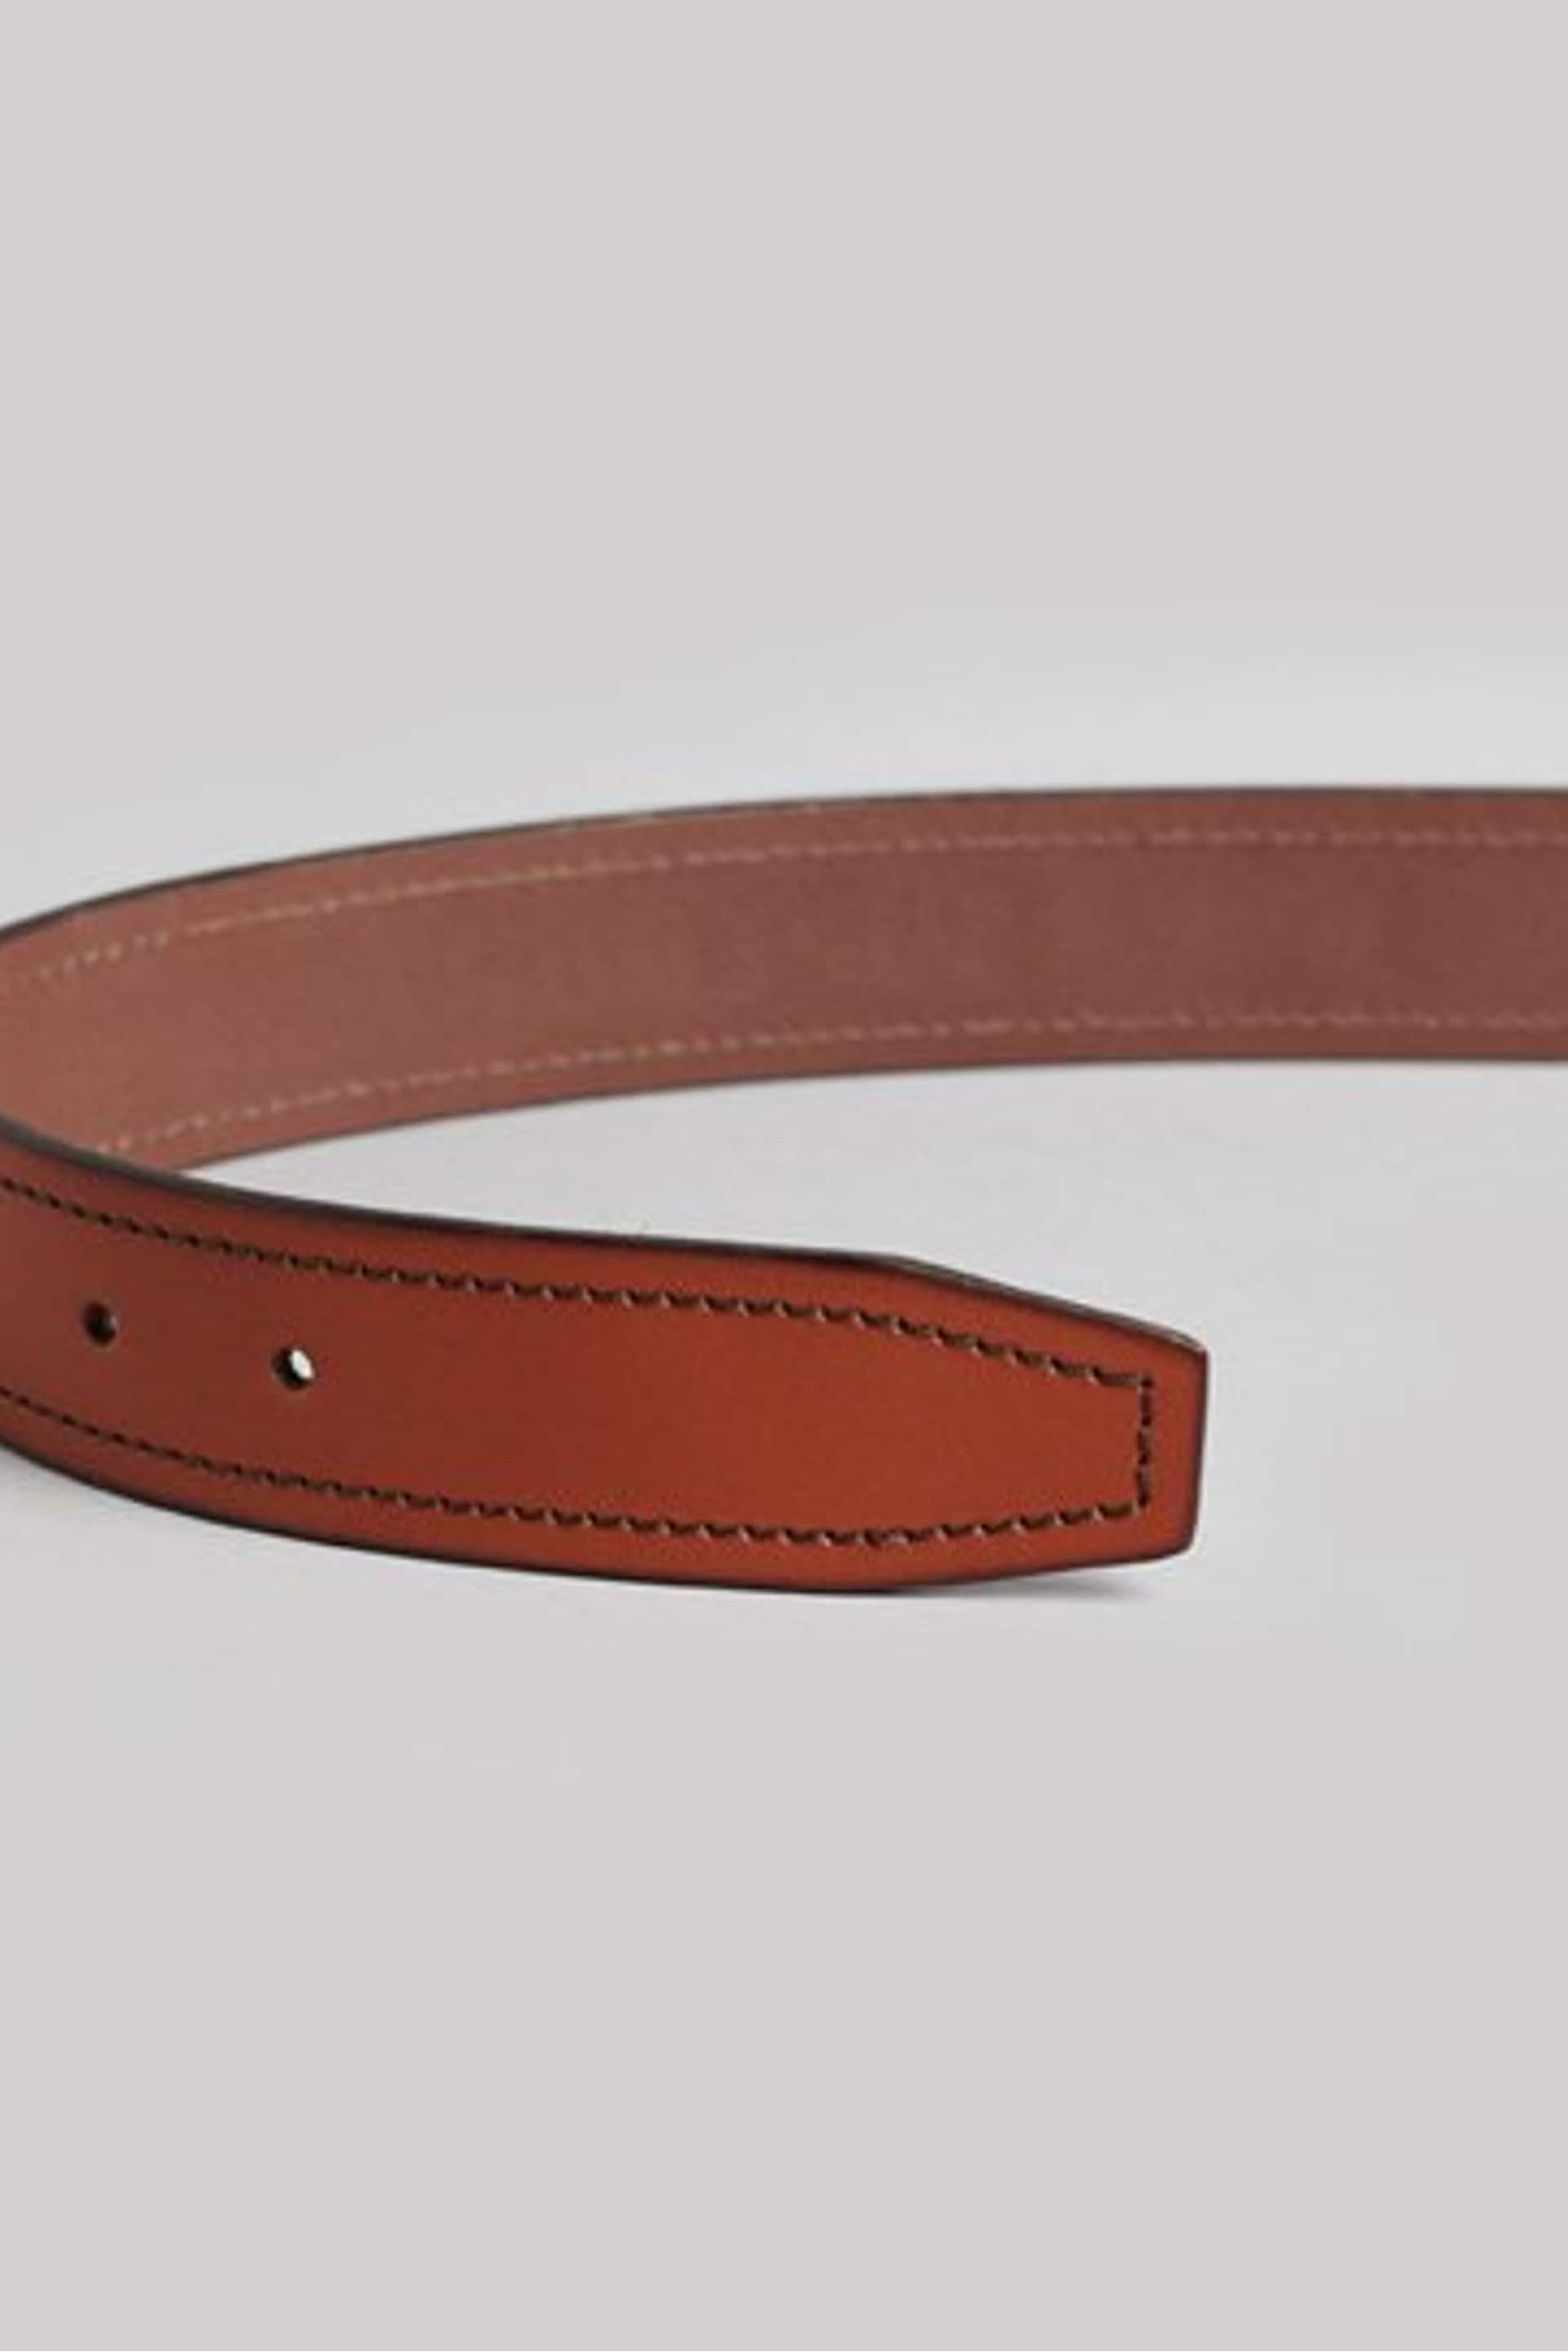 Superdry Brown Vintage Branded Belt - Image 2 of 4